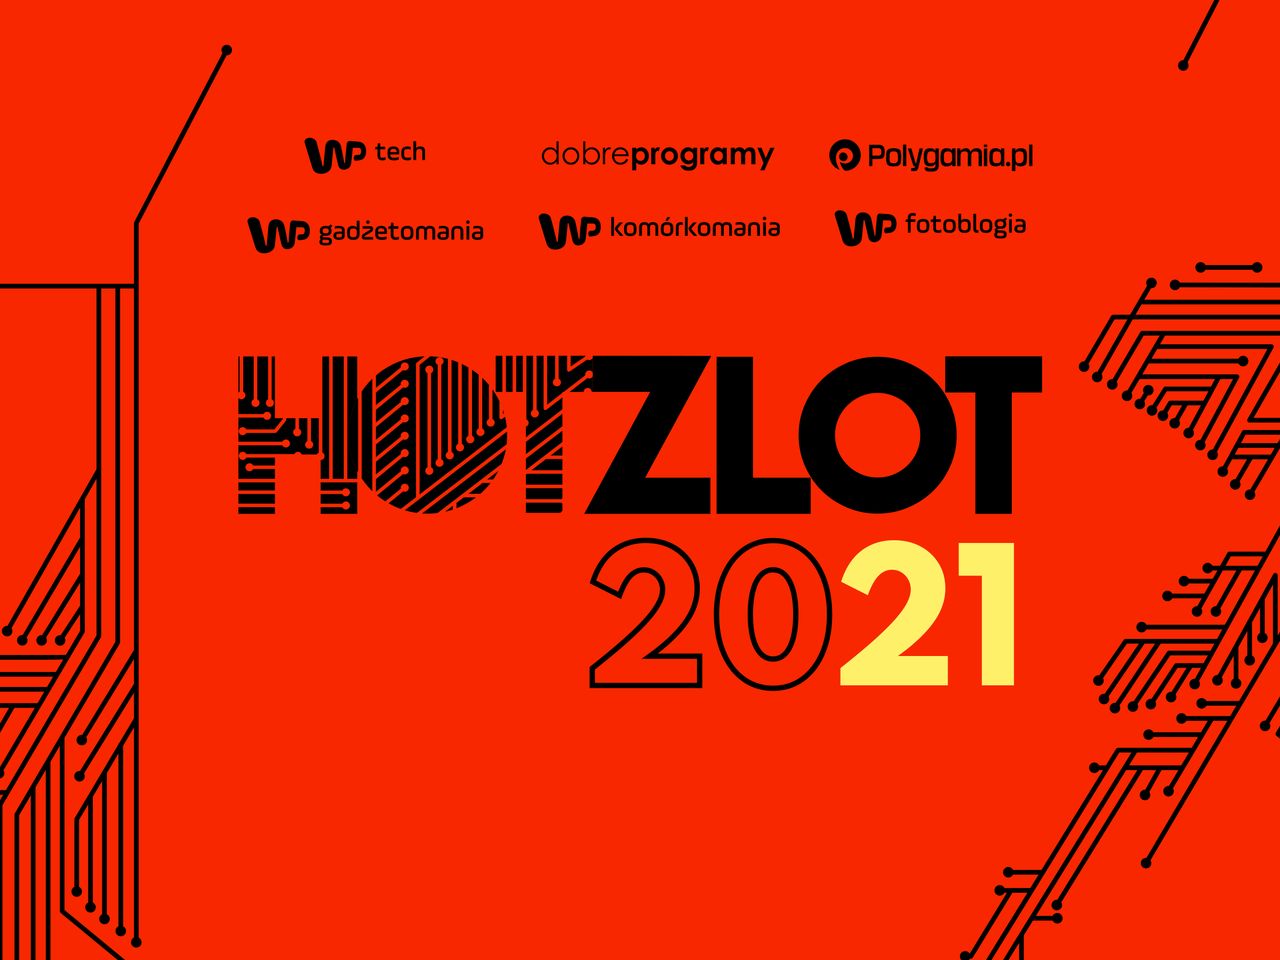 HotZlot 2021. Przypominamy prezentacje z tegorocznej edycji zlotu - HotZlot 2021